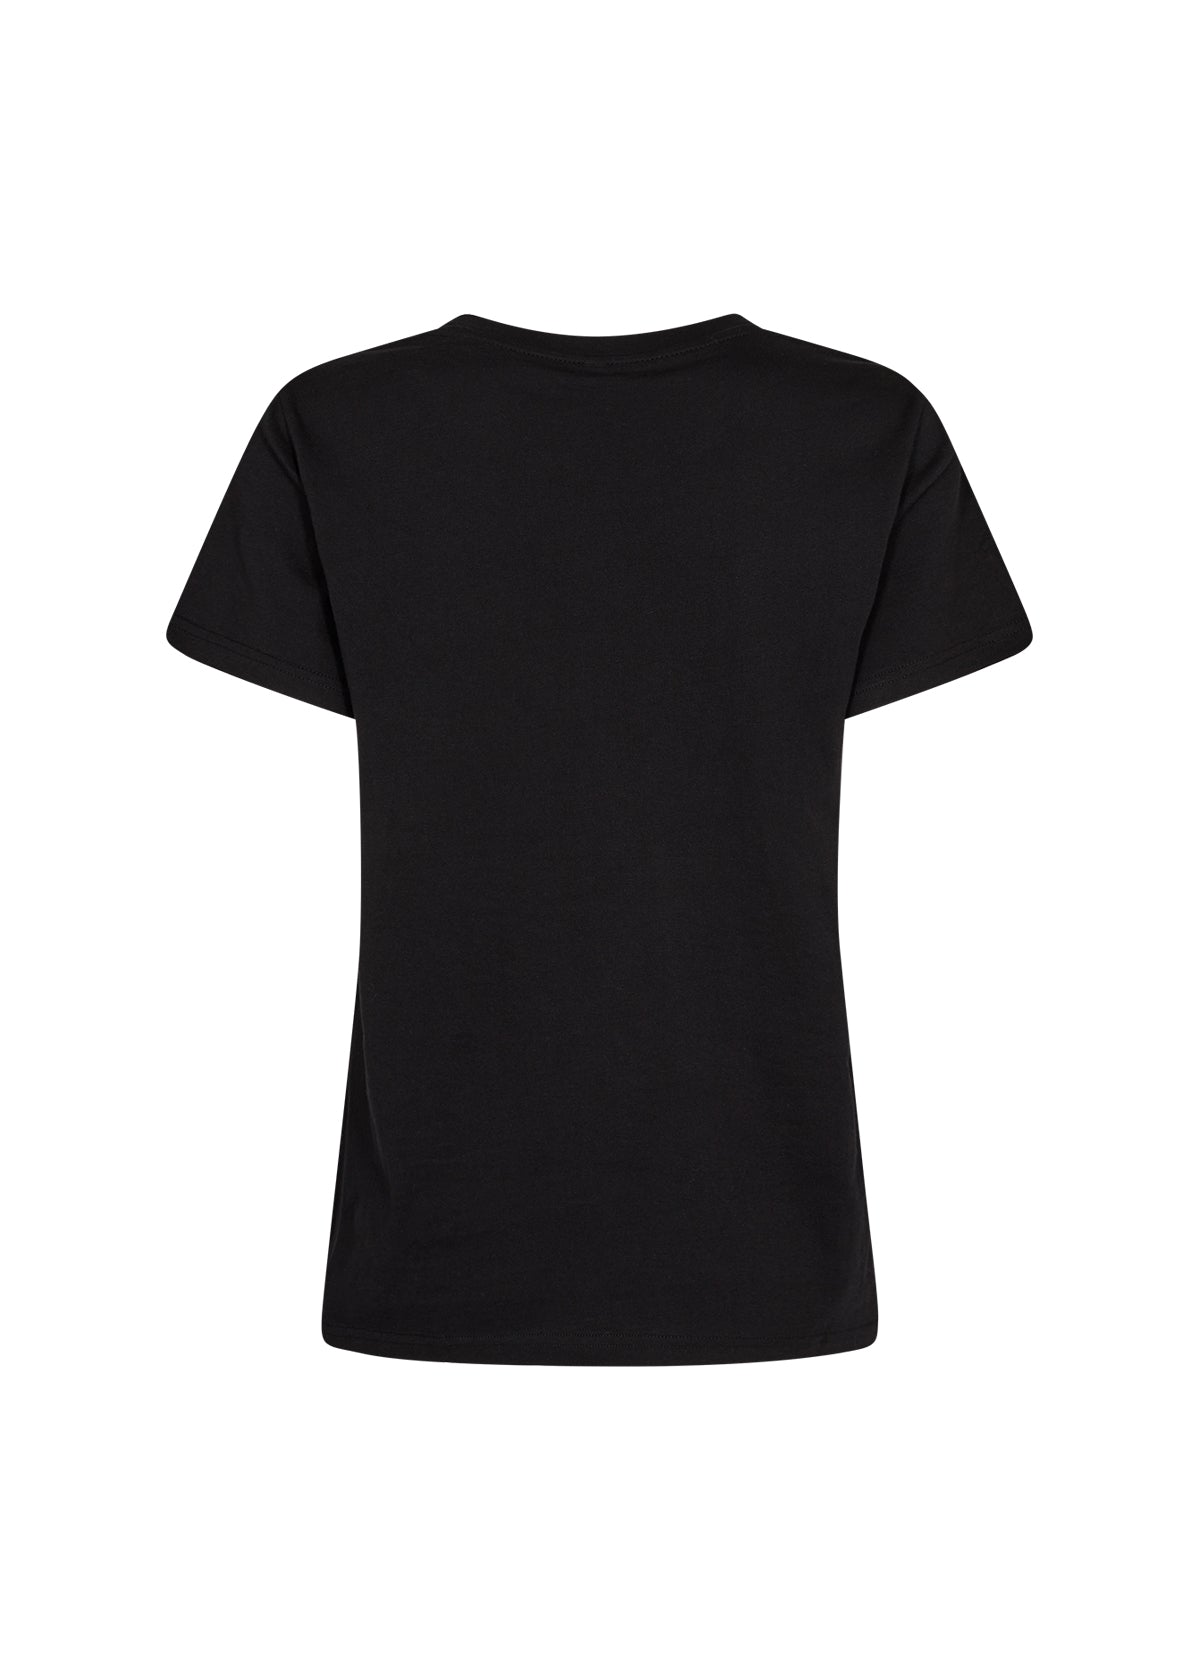 Soya Concept - Derby Cotton Black T-Shirt